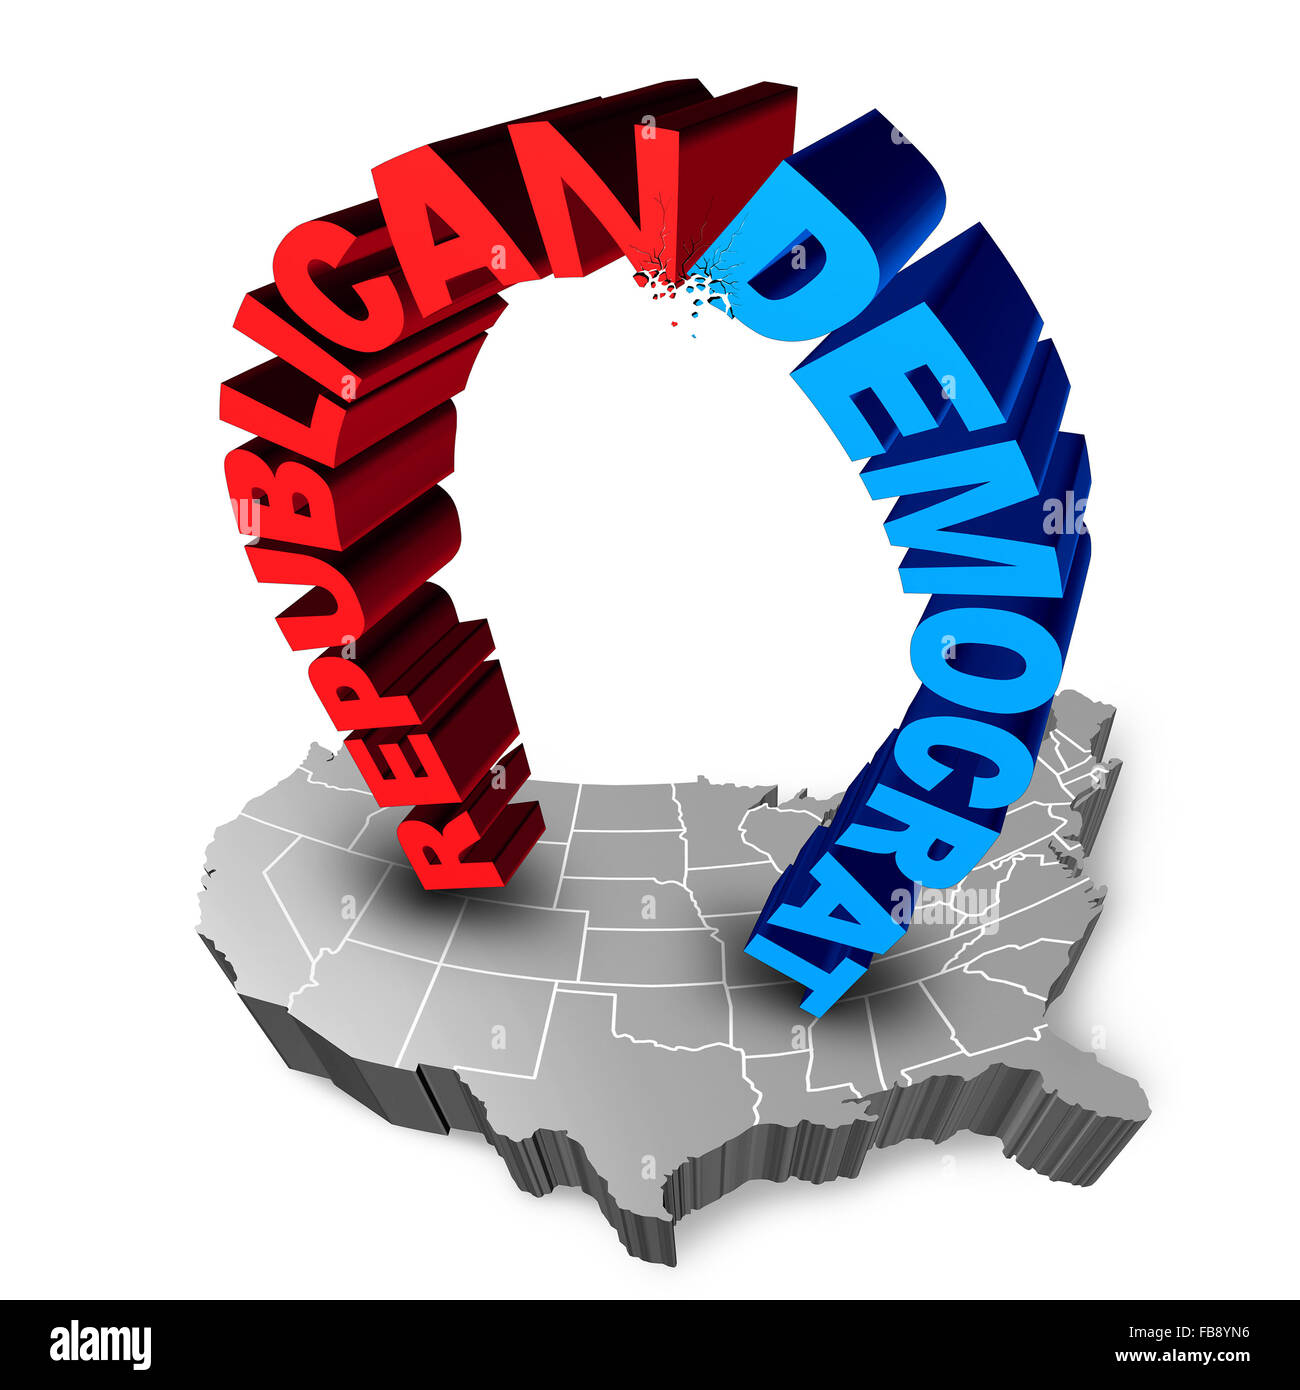 US-Wahl-Kampf als Republikaner oder Demokrat als zwei drei dimensionalen Text Symbole auf einer Karte von den Vereinigten Staaten kämpfen um die Abstimmung für Präsidenten oder Regierung sitzen. Stockfoto